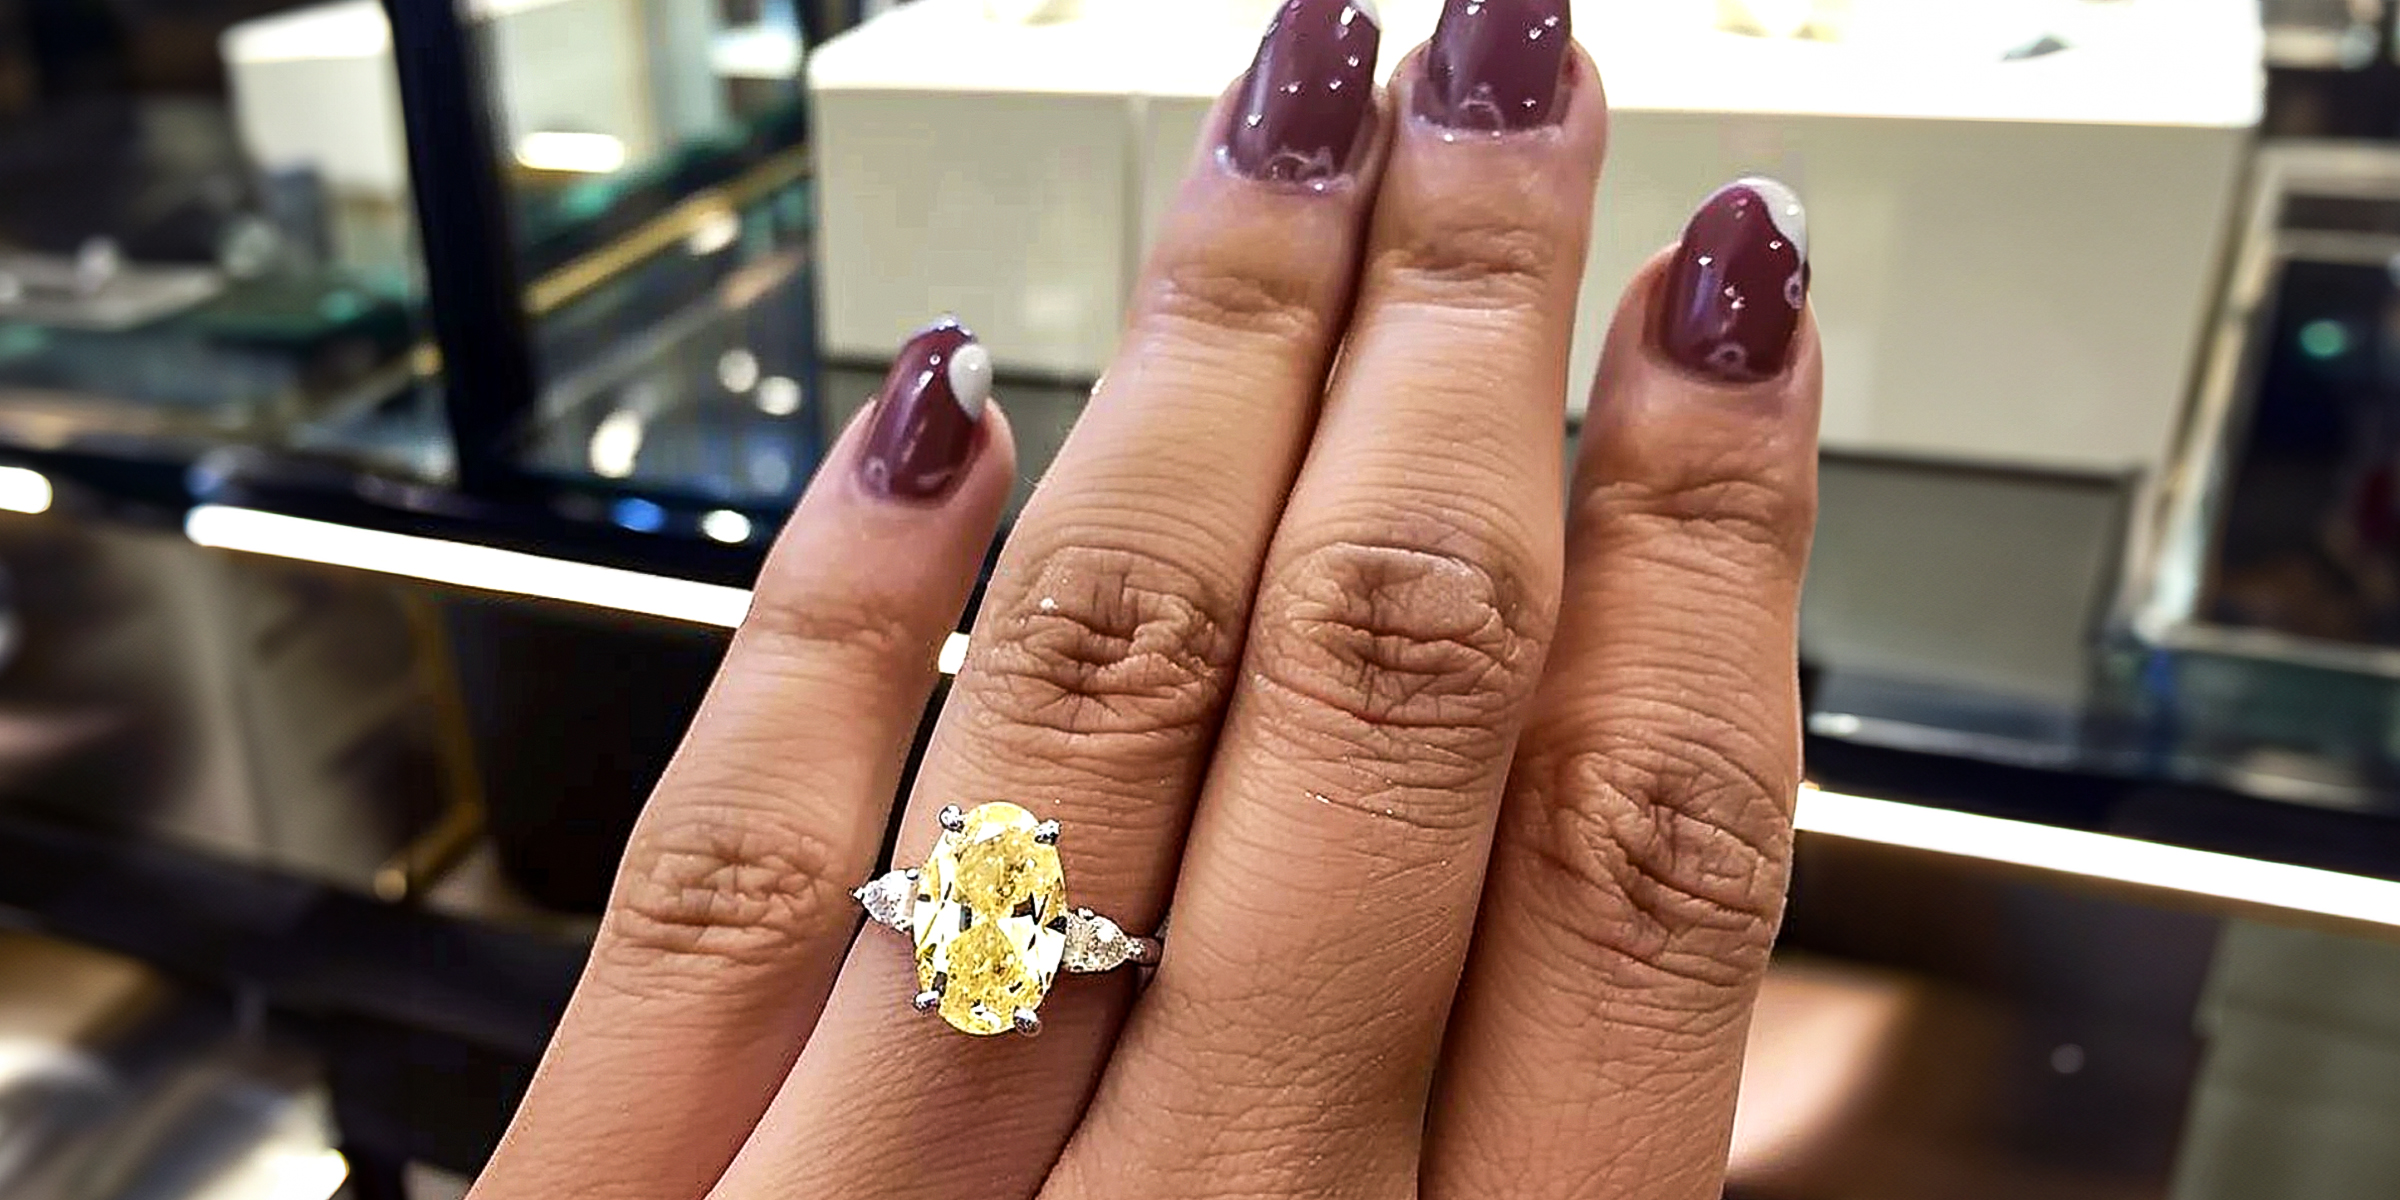 A yellow diamond ring | Source: AmoMama